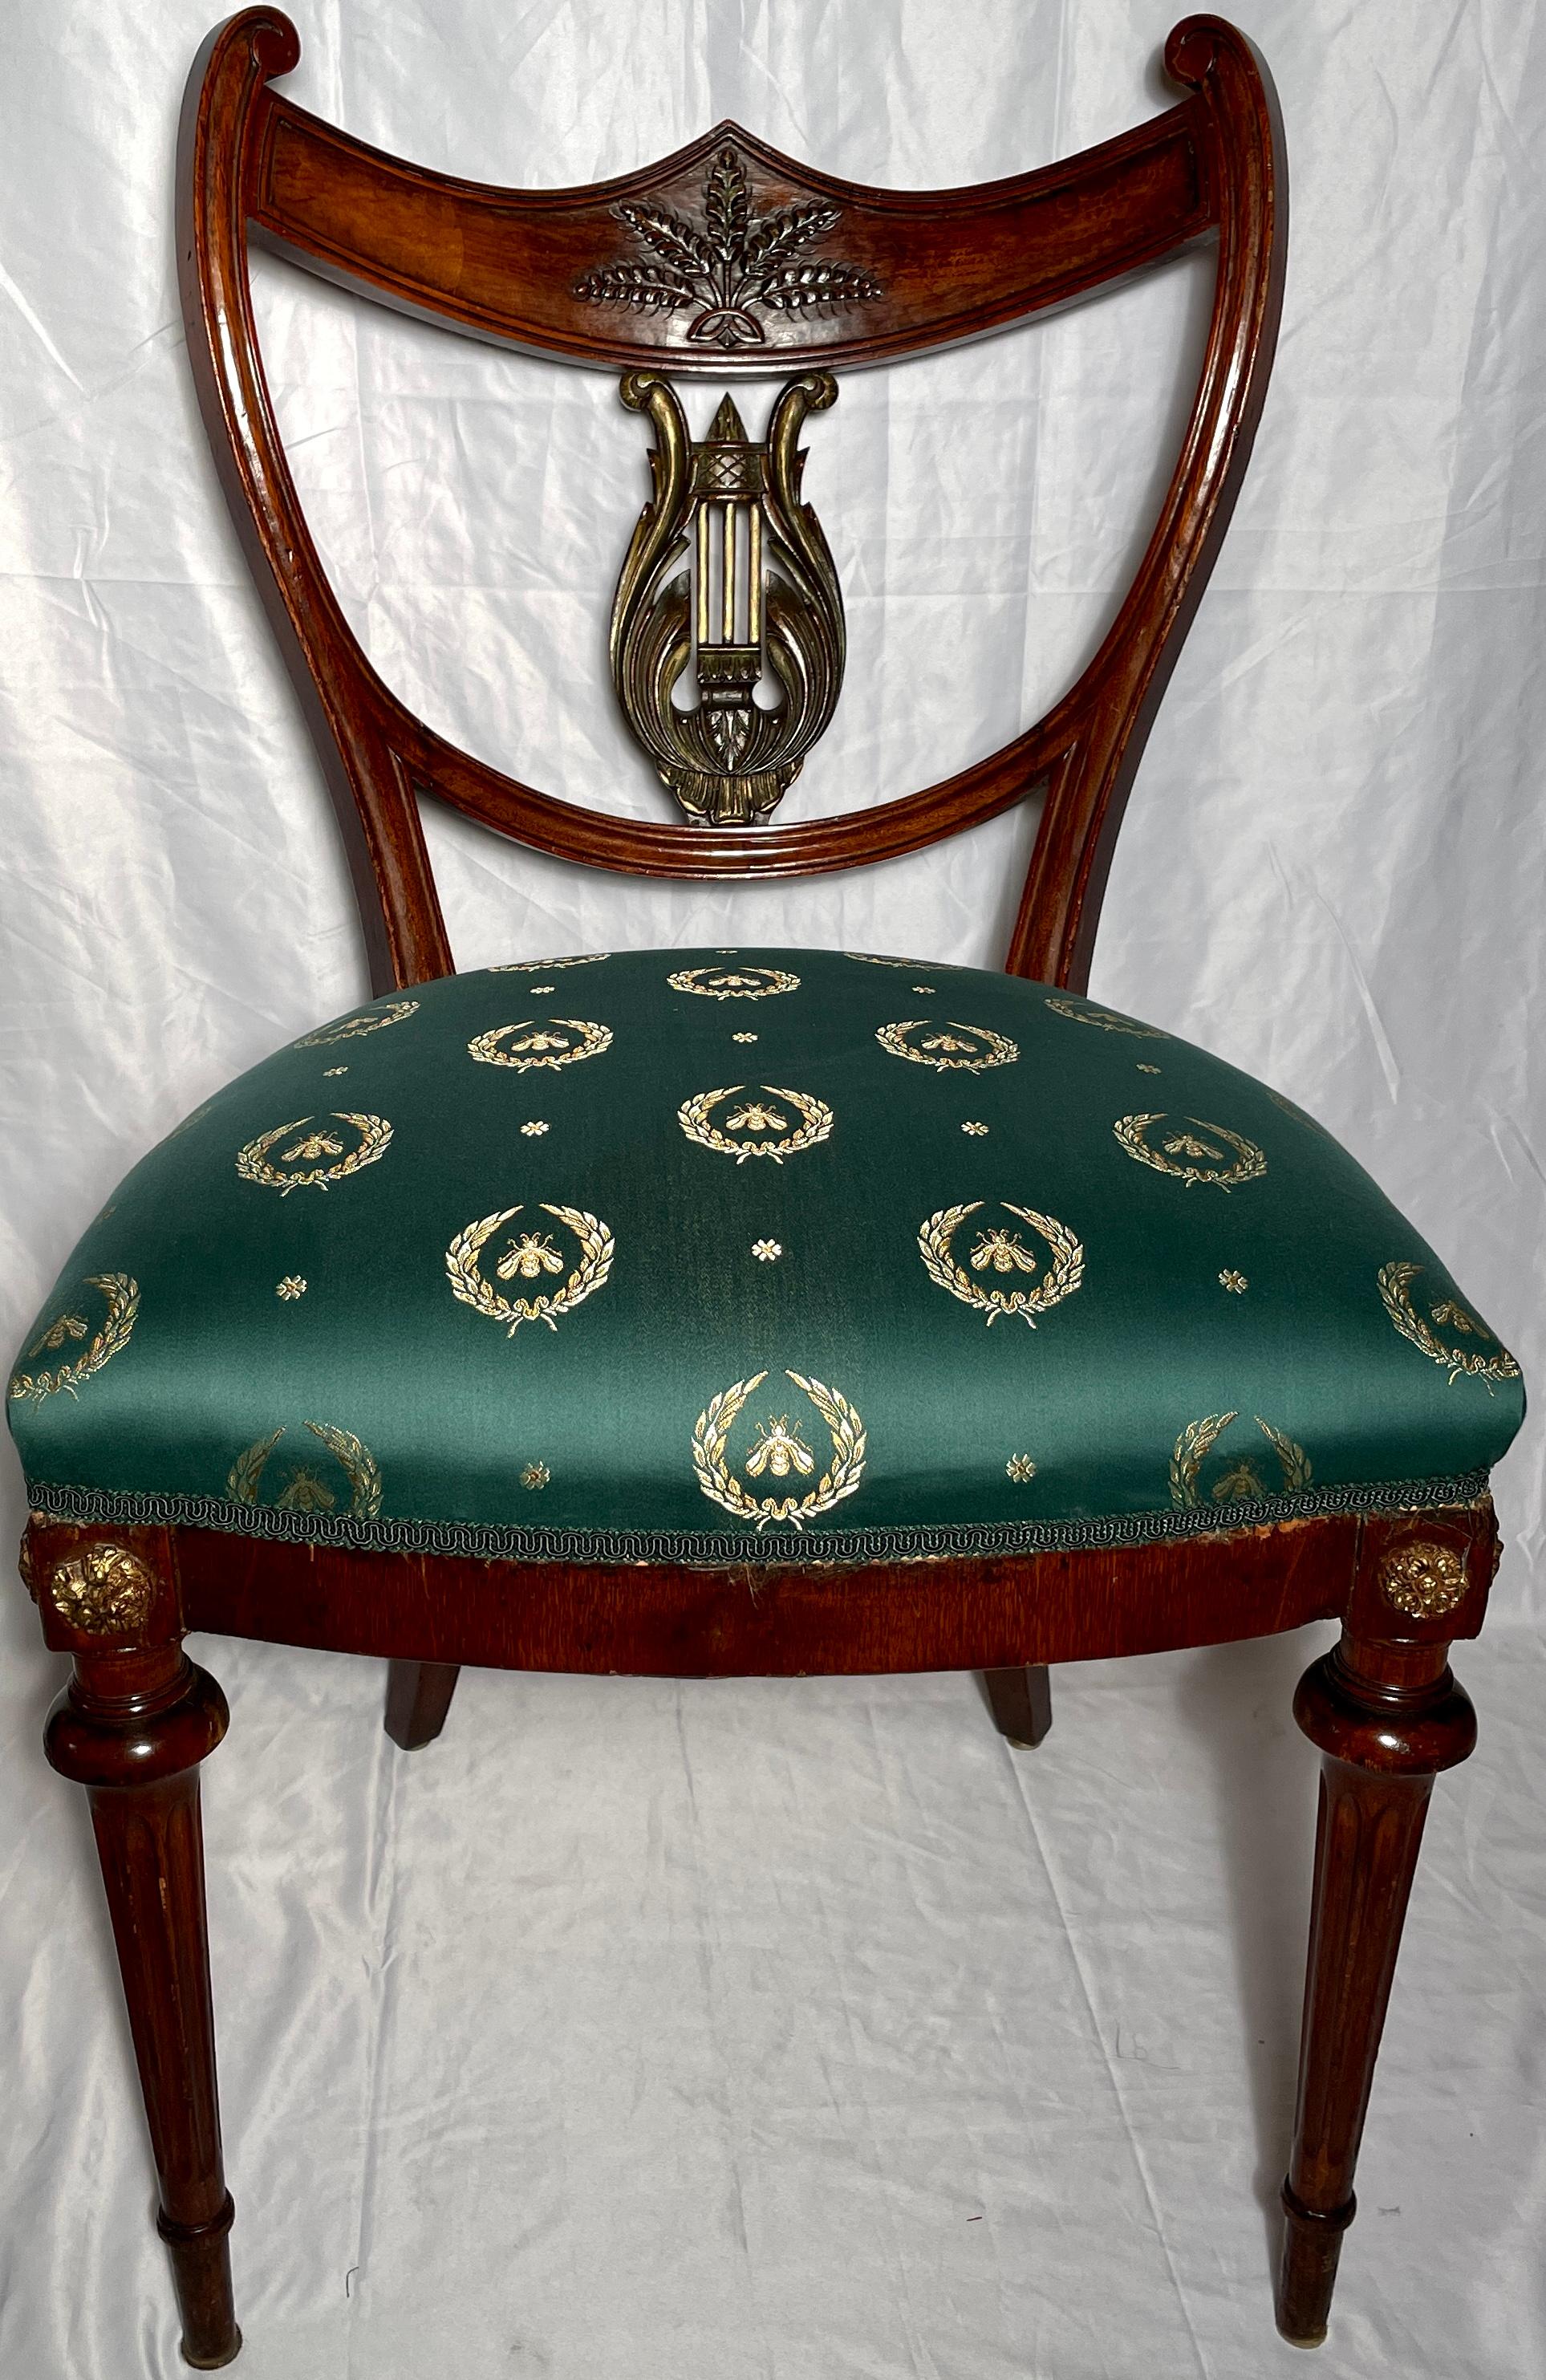 Paar antike englische Regency-Stühle aus Mahagoni, ca. 1820-1830. 
Gepolstert mit smaragdgrünem und goldenem Seidenstoff.